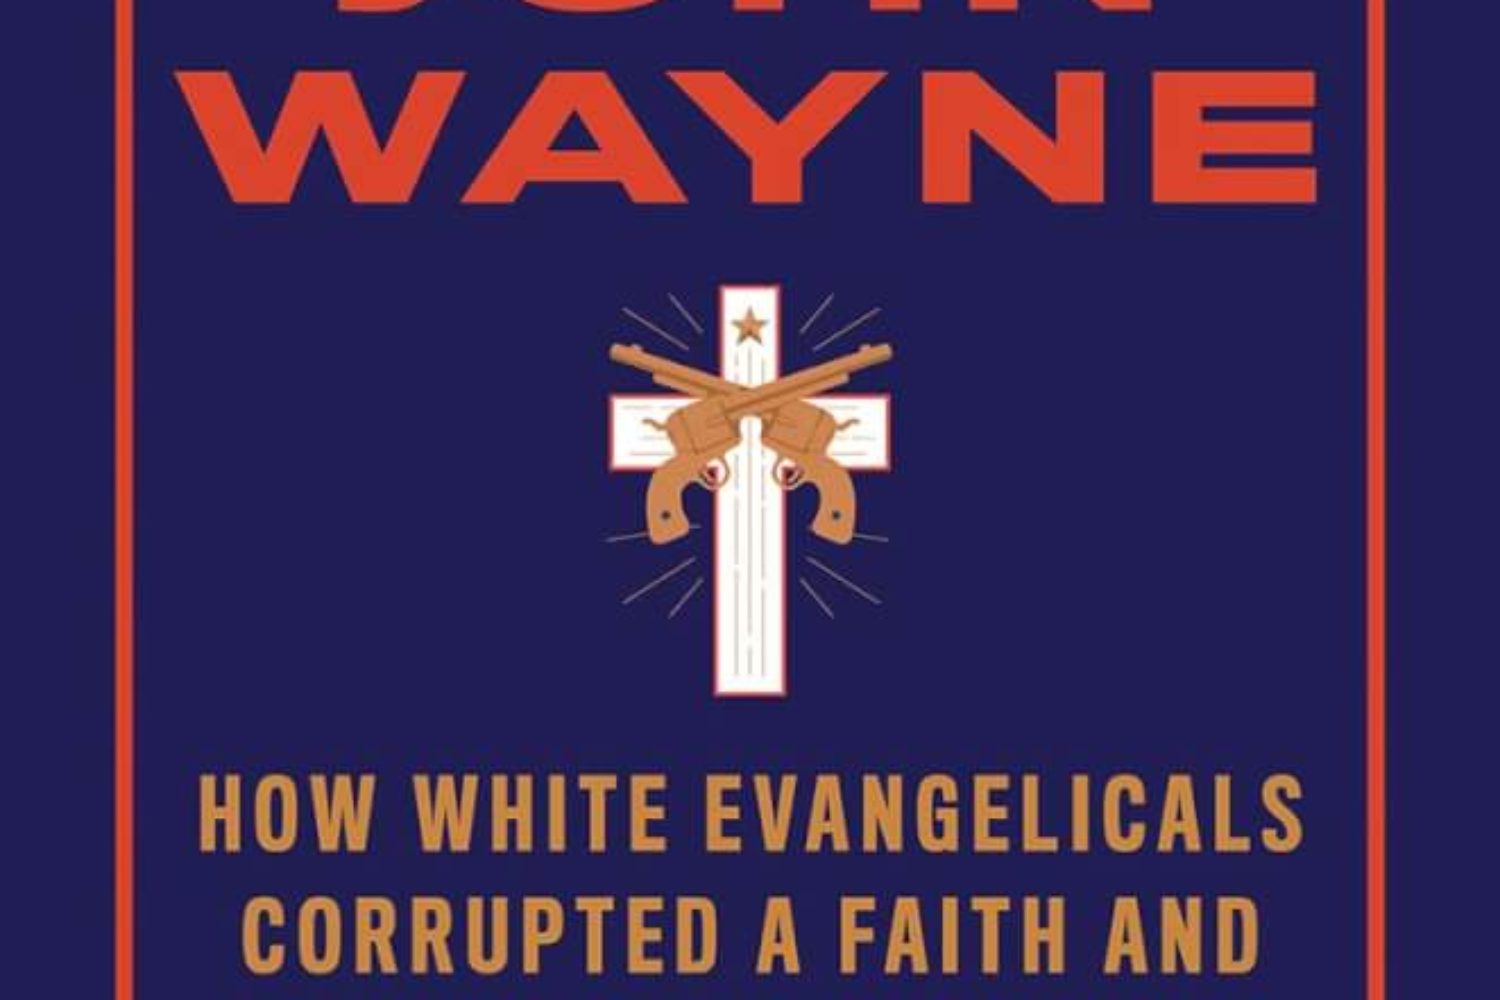 jesus and john wayne book review